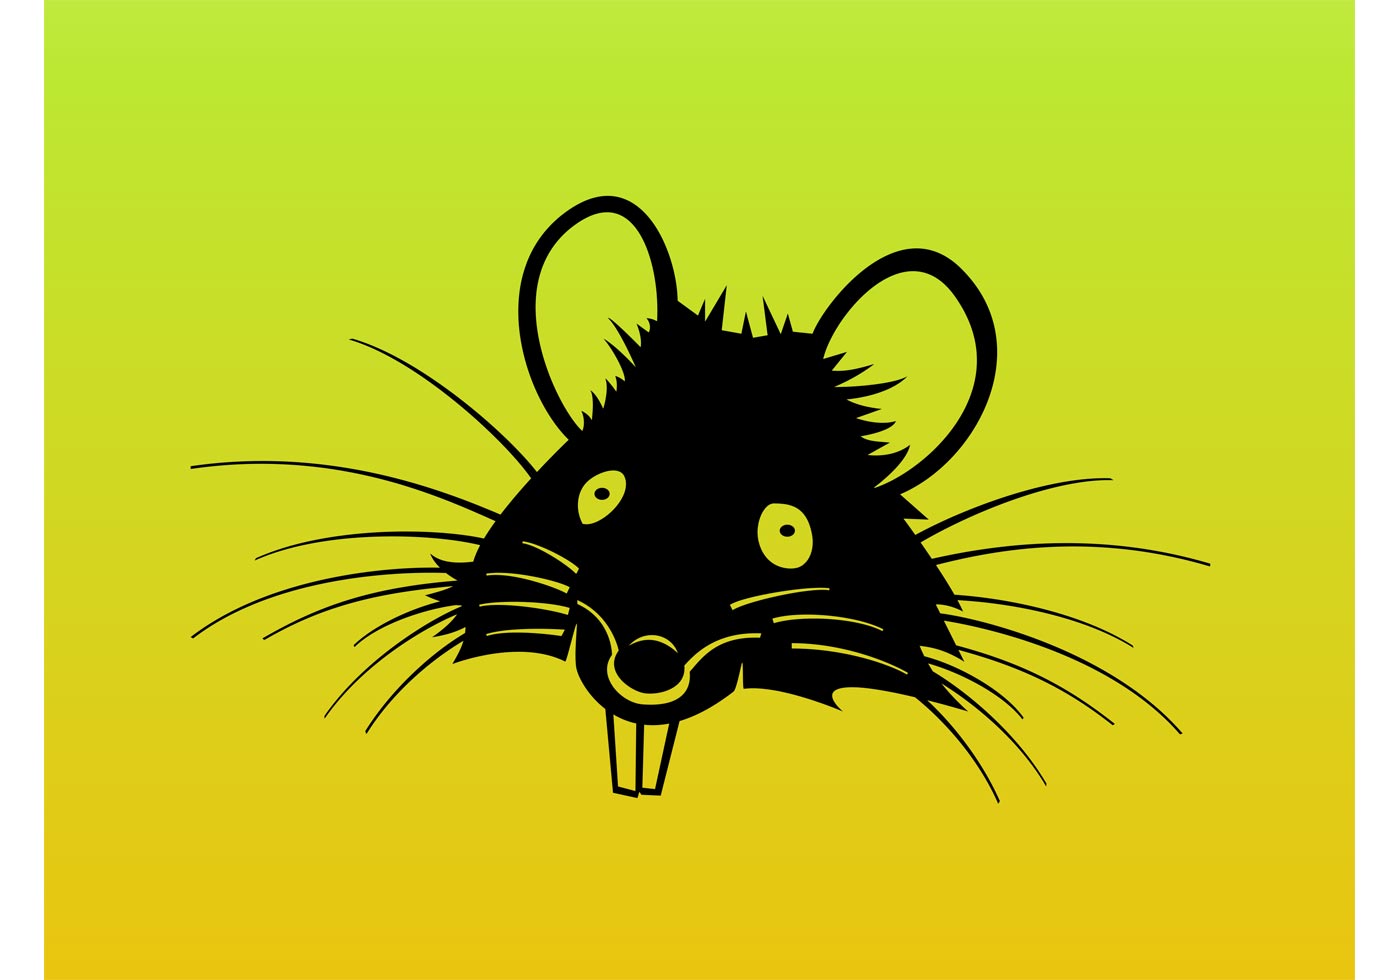 Download Rat Cartoon Vector - Download Free Vector Art, Stock Graphics & Images